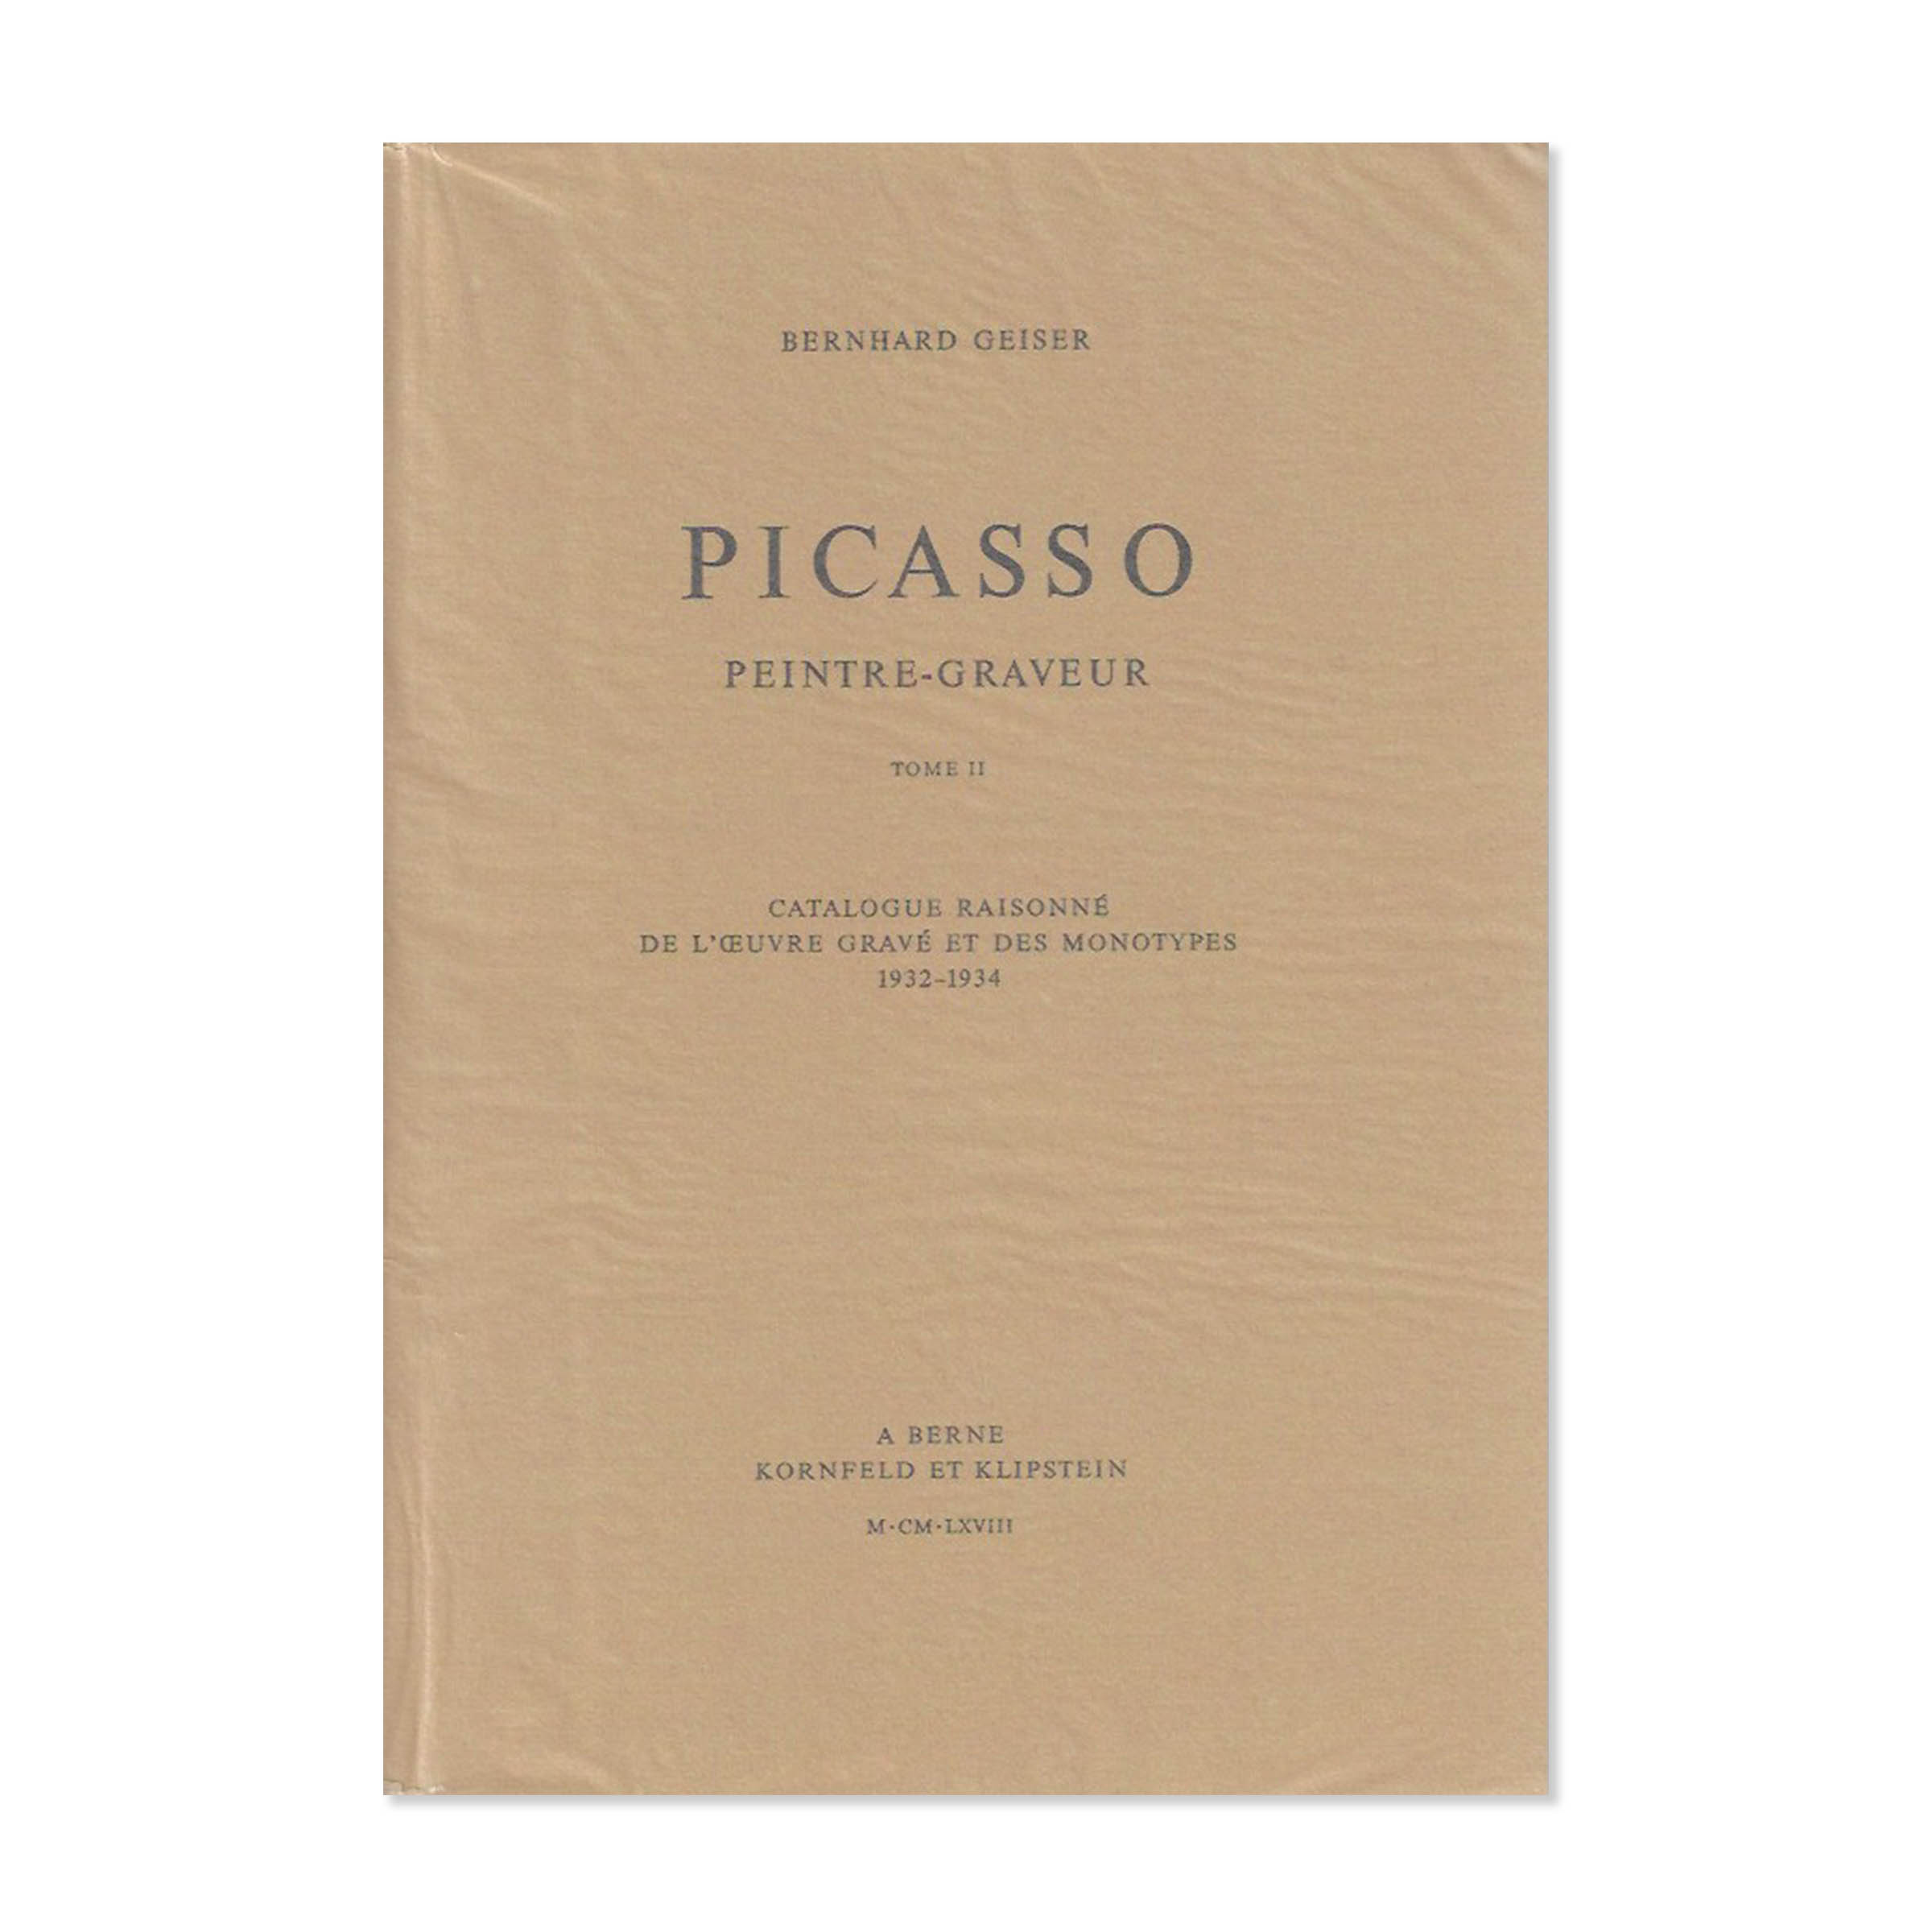 Picasso peintre-graveur tome II